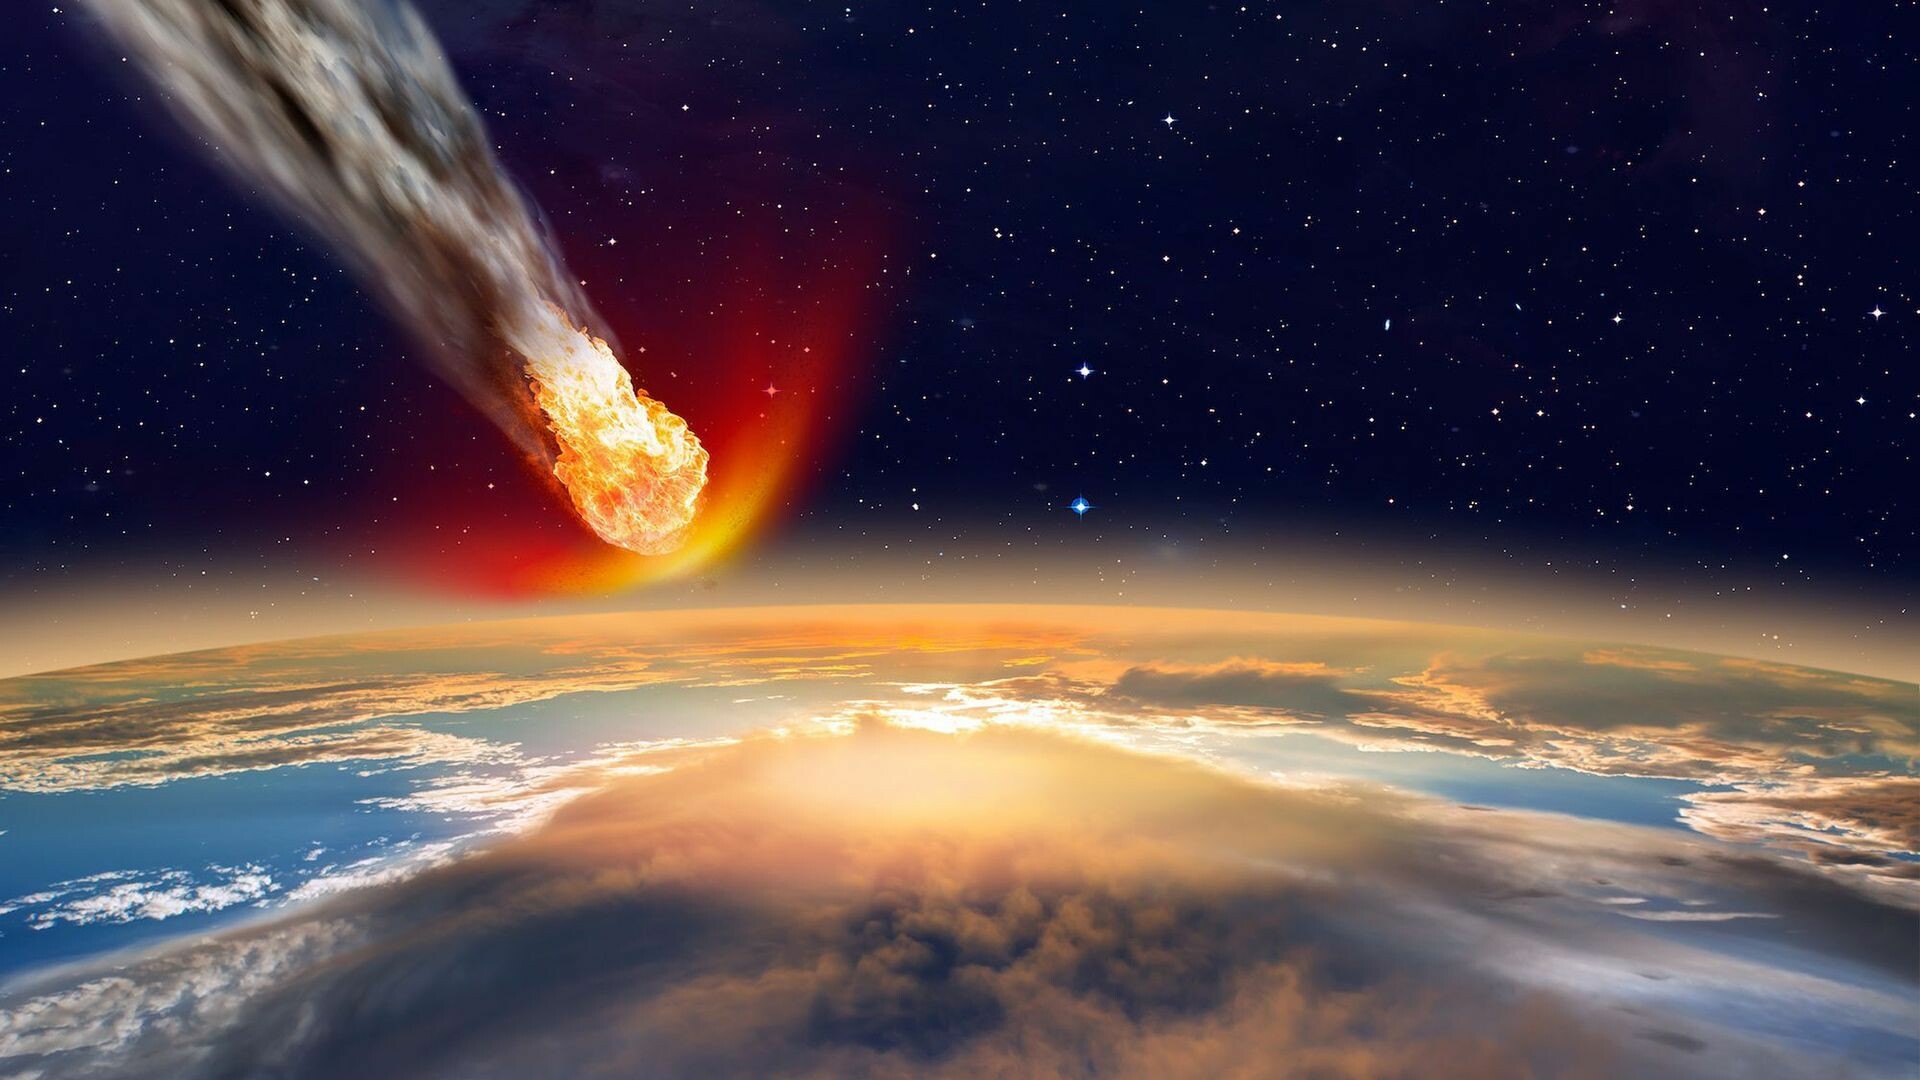 Meteor: Space, Meteorite, Earth's atmosphere. 1920x1080 Full HD Background.